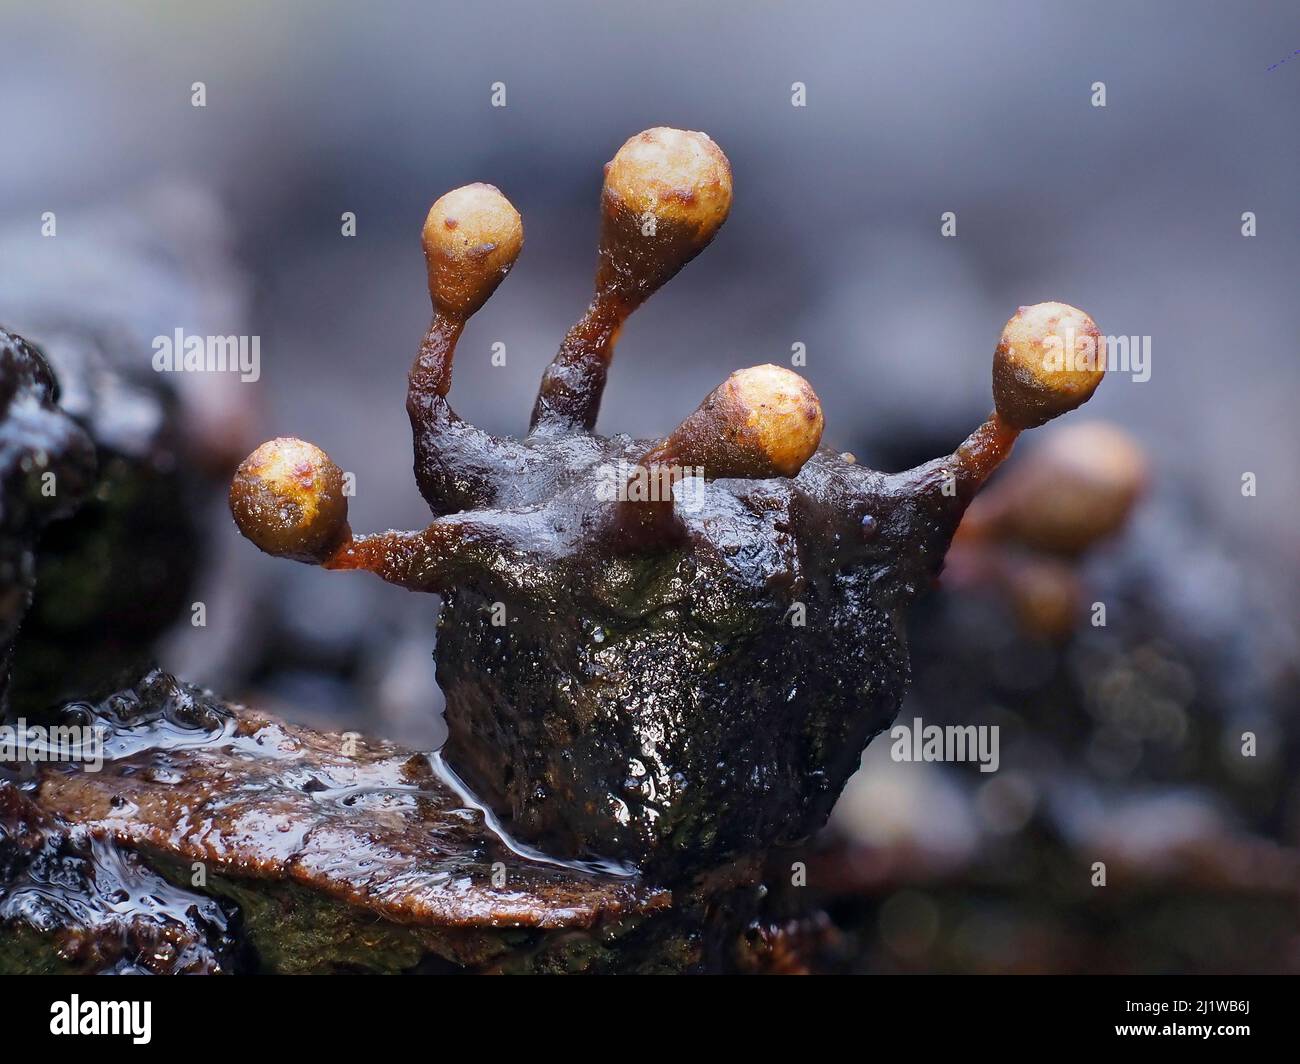 Moule à chaux (Trichia botrytis), en phase de reproduction. Gros plan des organes de fructification porteurs de spores (sporanges). Buckinghamshire, Royaume-Uni. Banque D'Images